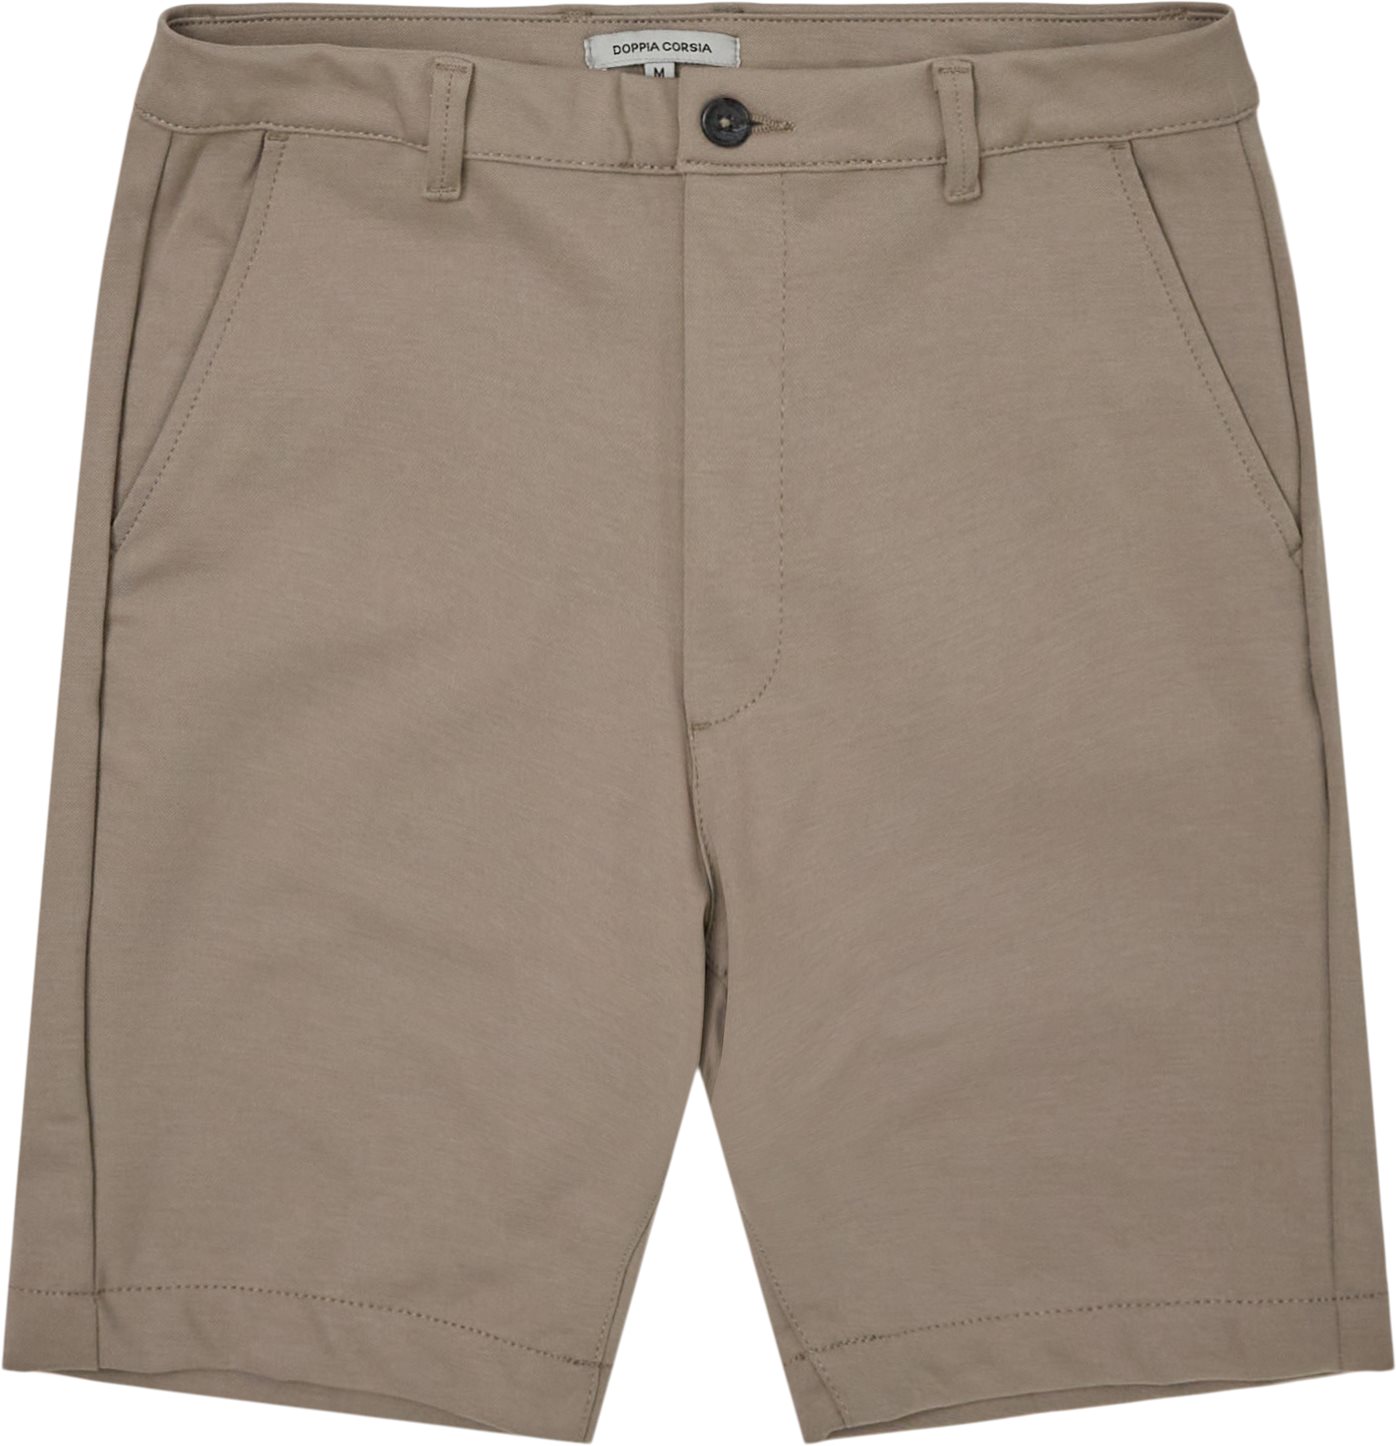 Colette Shorts - Shorts - Regular fit - Sand